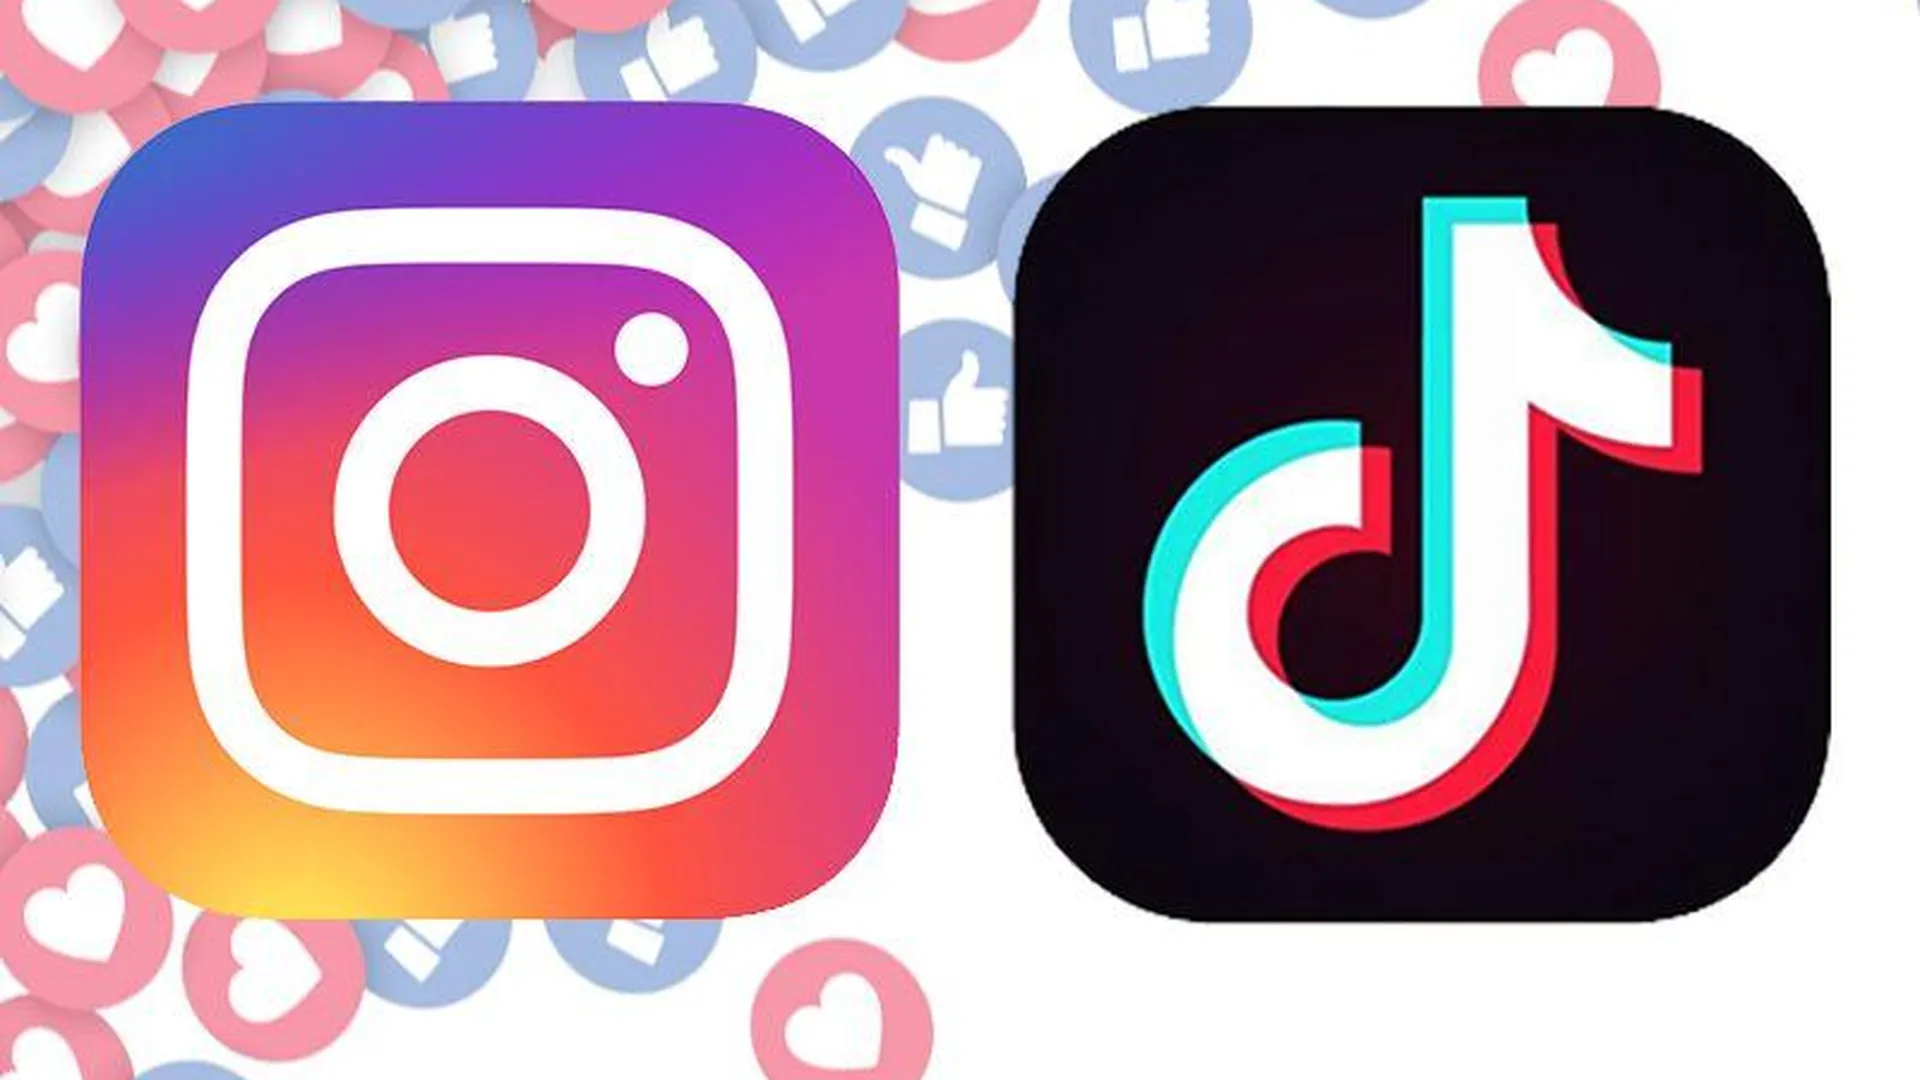 TikTok и Instagram сражаются за аудиторию после блокировок соцсетей